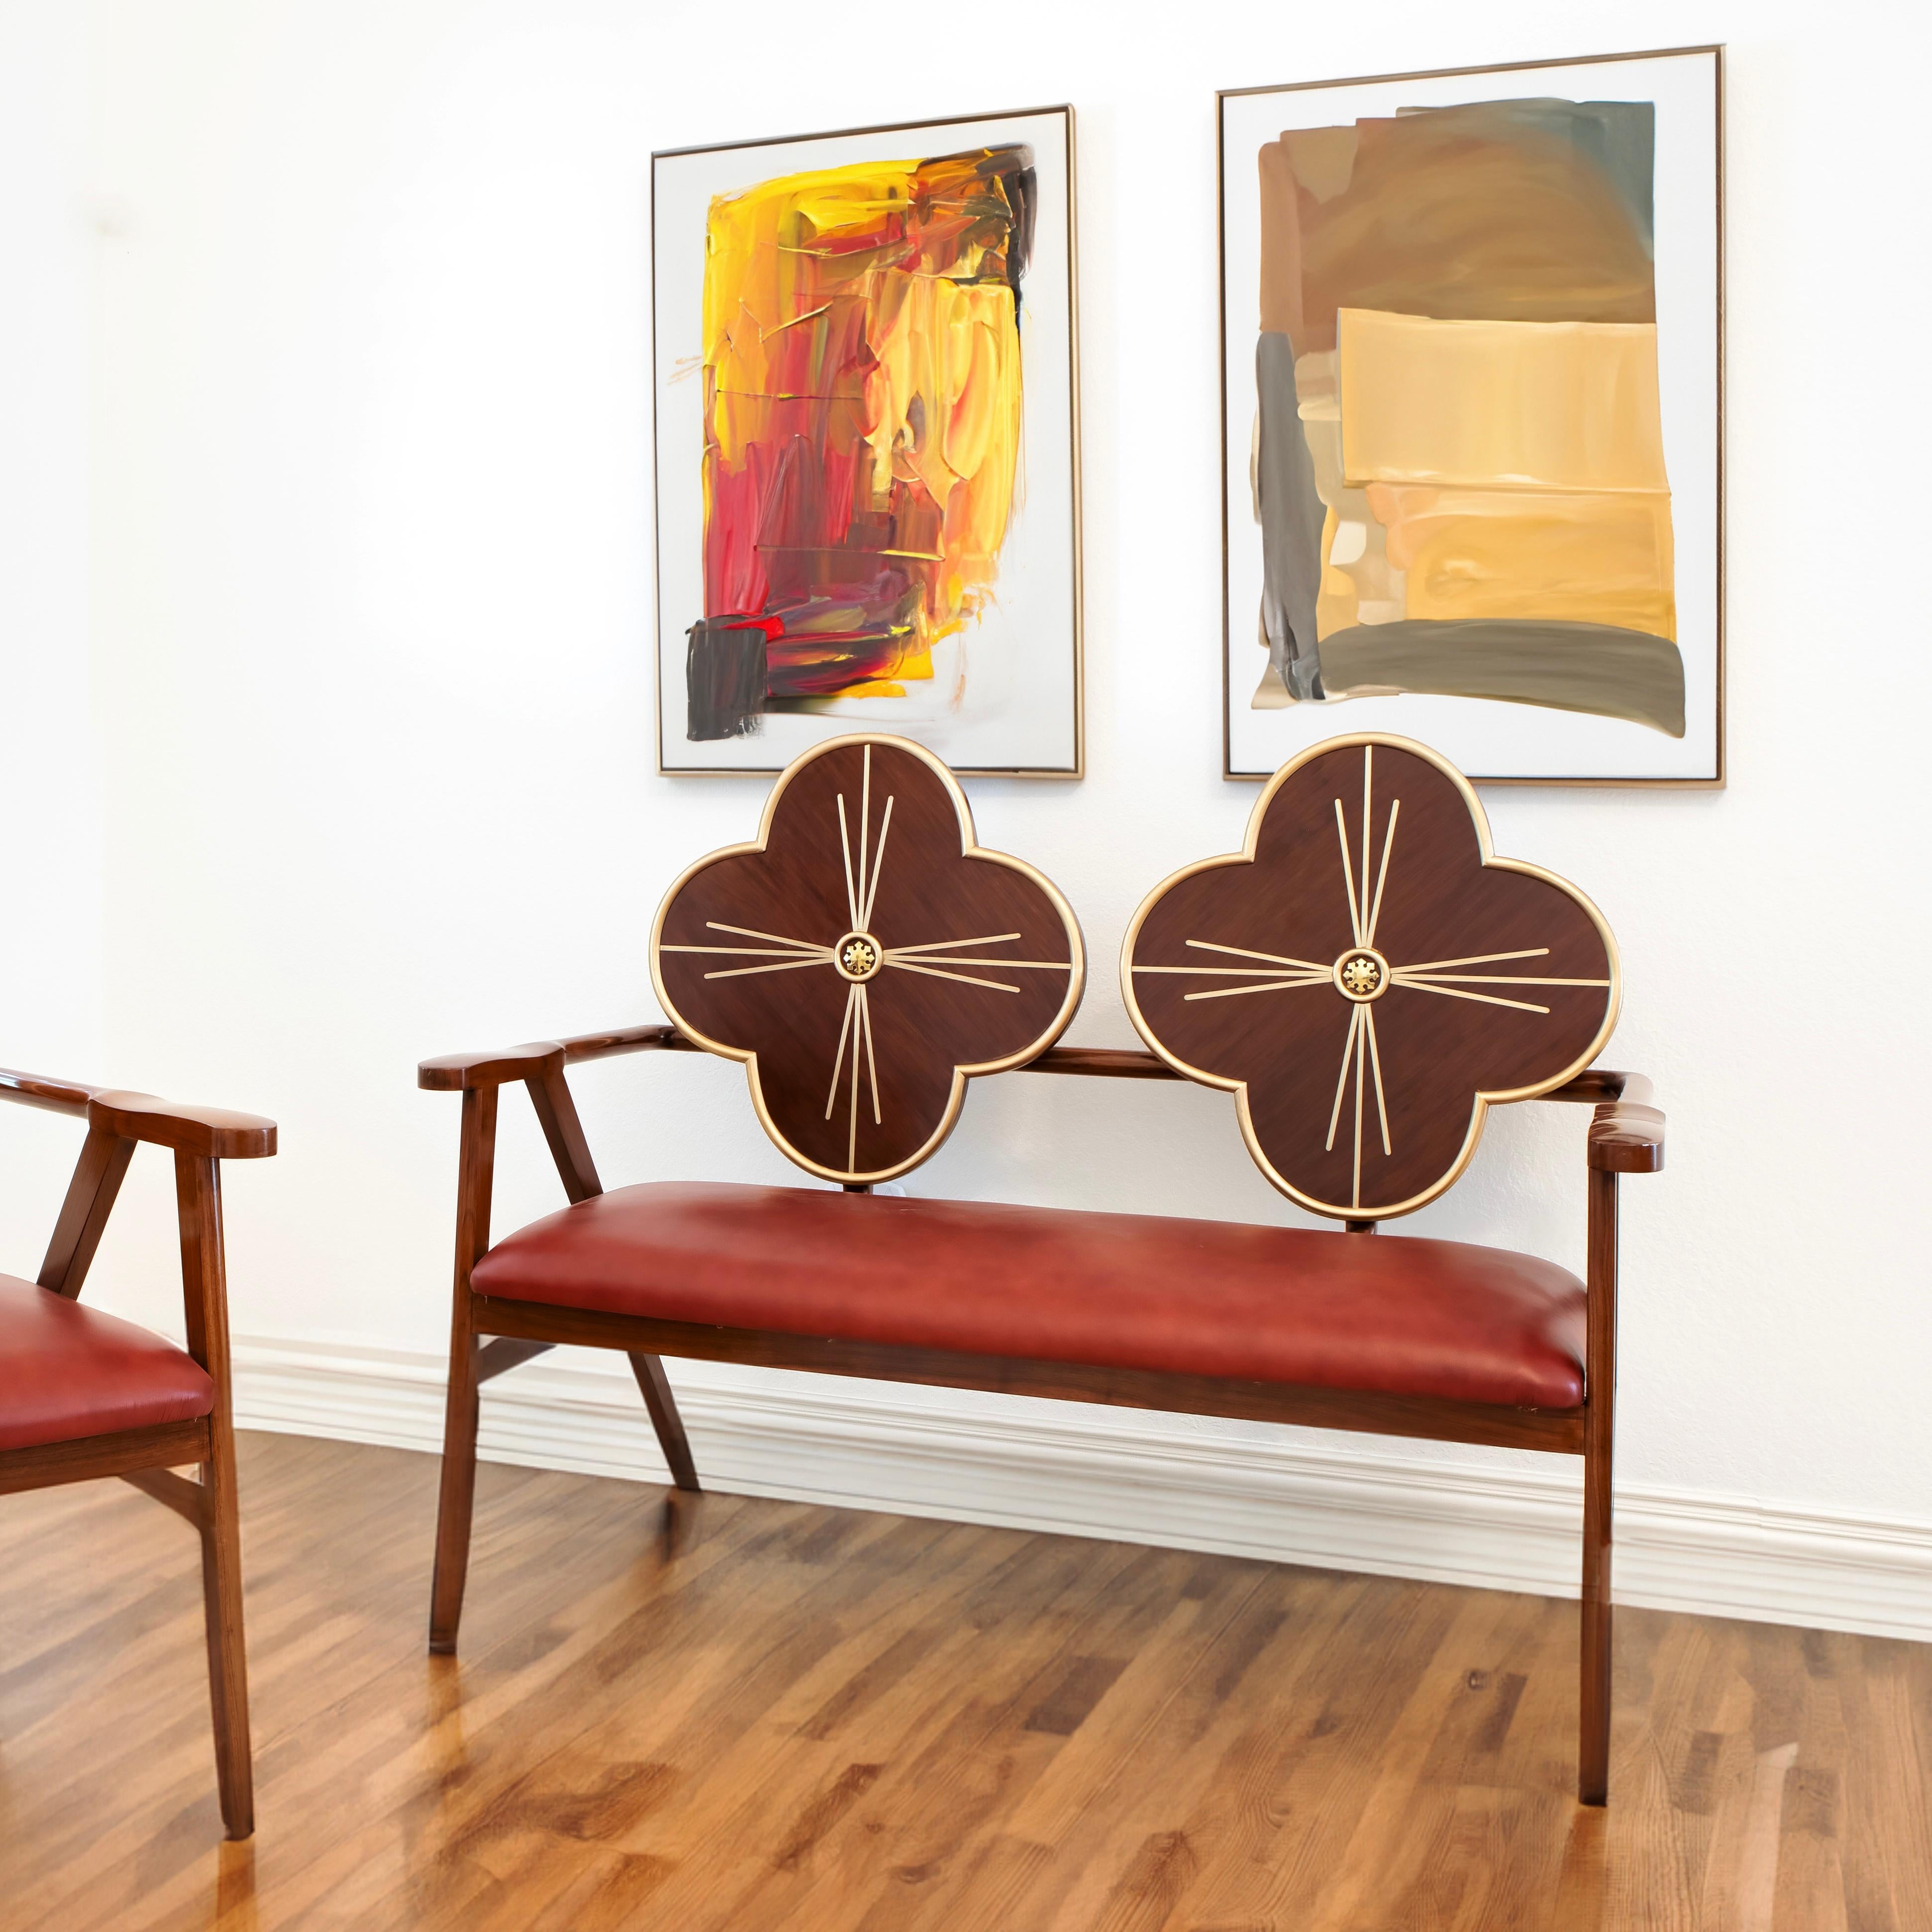 Rehaussez votre espace avec l'Elegance de l'Art Nouveau : La chaise Fleur

Plongez dans l'univers opulent de l'Art nouveau avec la chaise Fleur, un véritable chef-d'œuvre où la grâce de la nature rencontre un design intemporel. Fabriquée à la main à